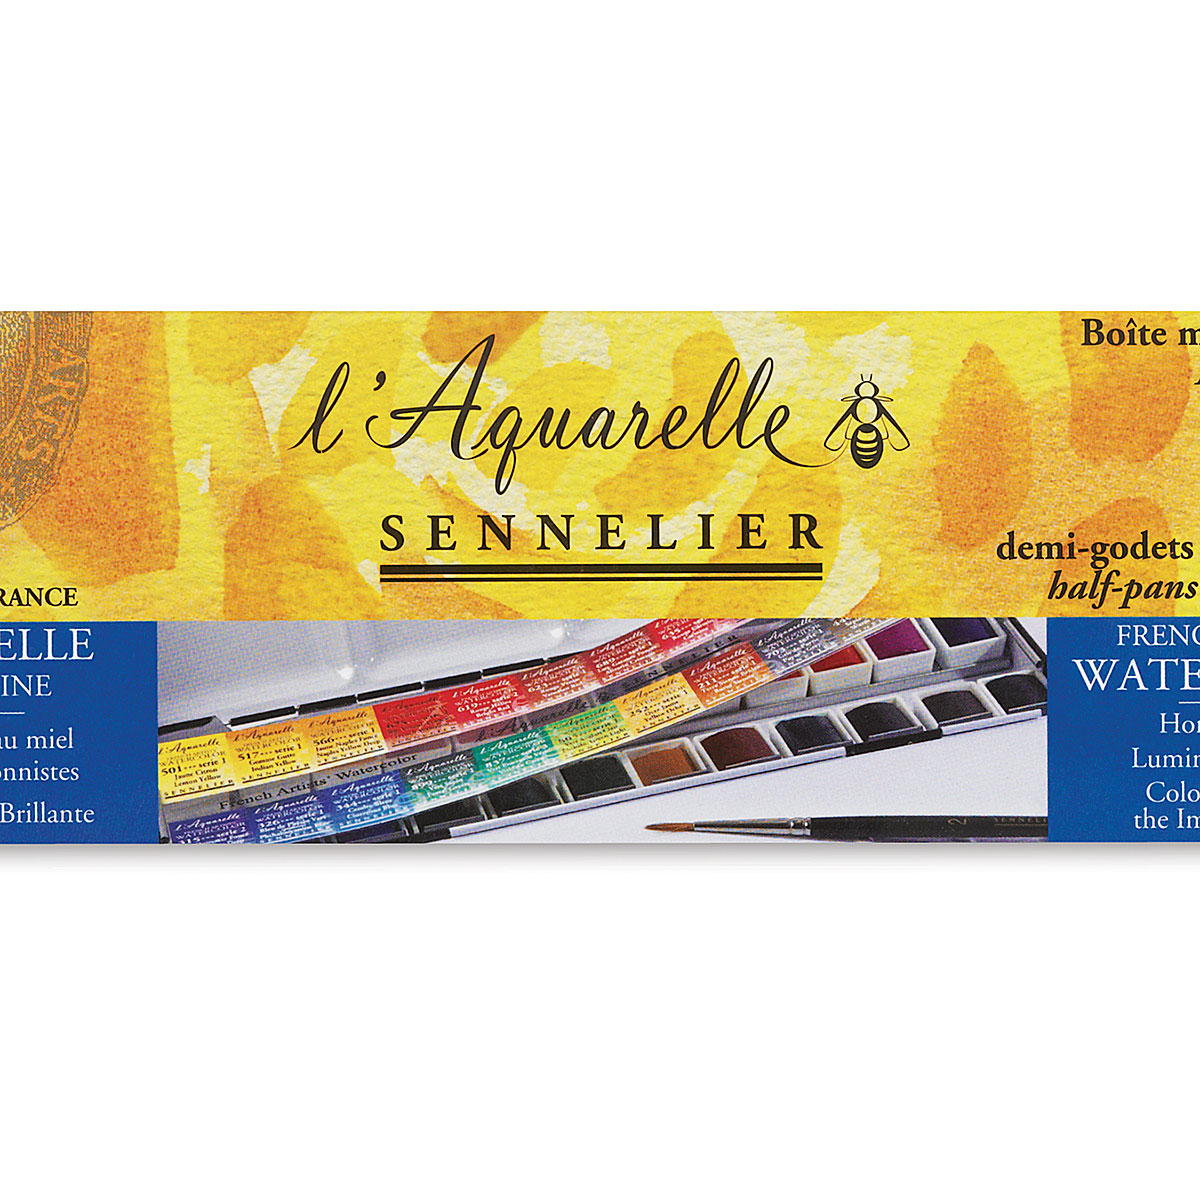 Sennelier Watercolor Set 24, Sennelier Watercolor Tubes, Aquarelle